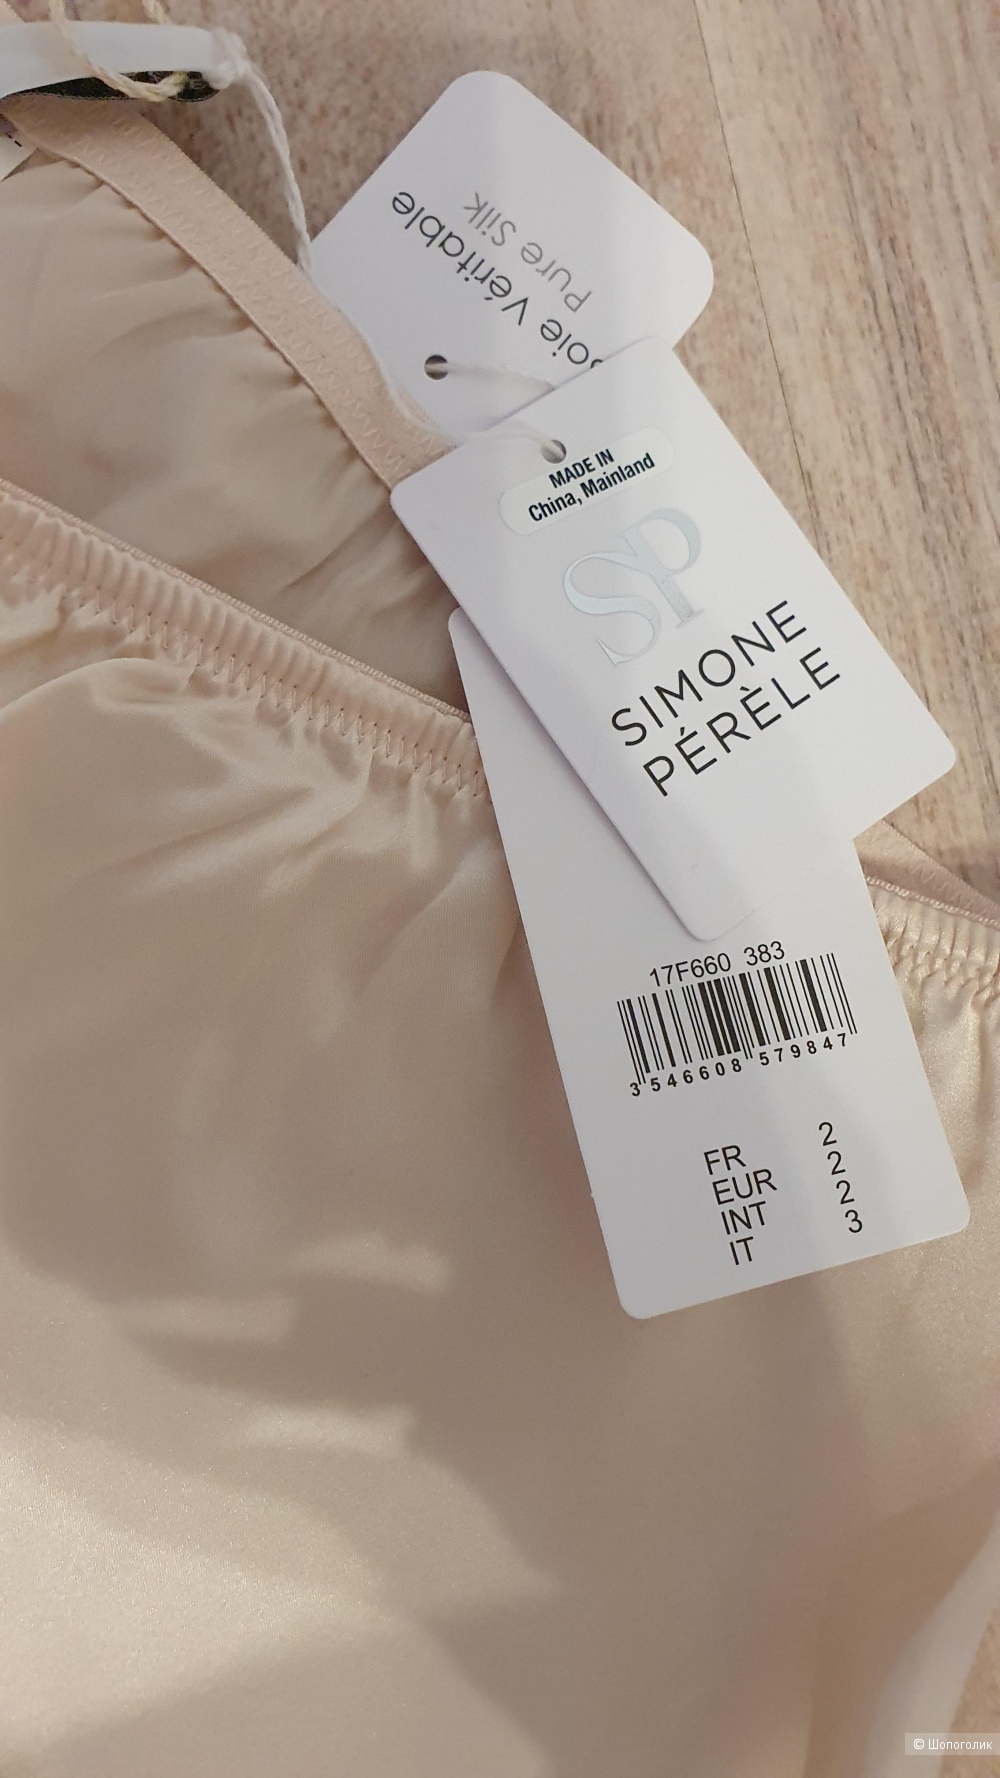 Пижамные штаны Simone perele,  2 и 3 размер